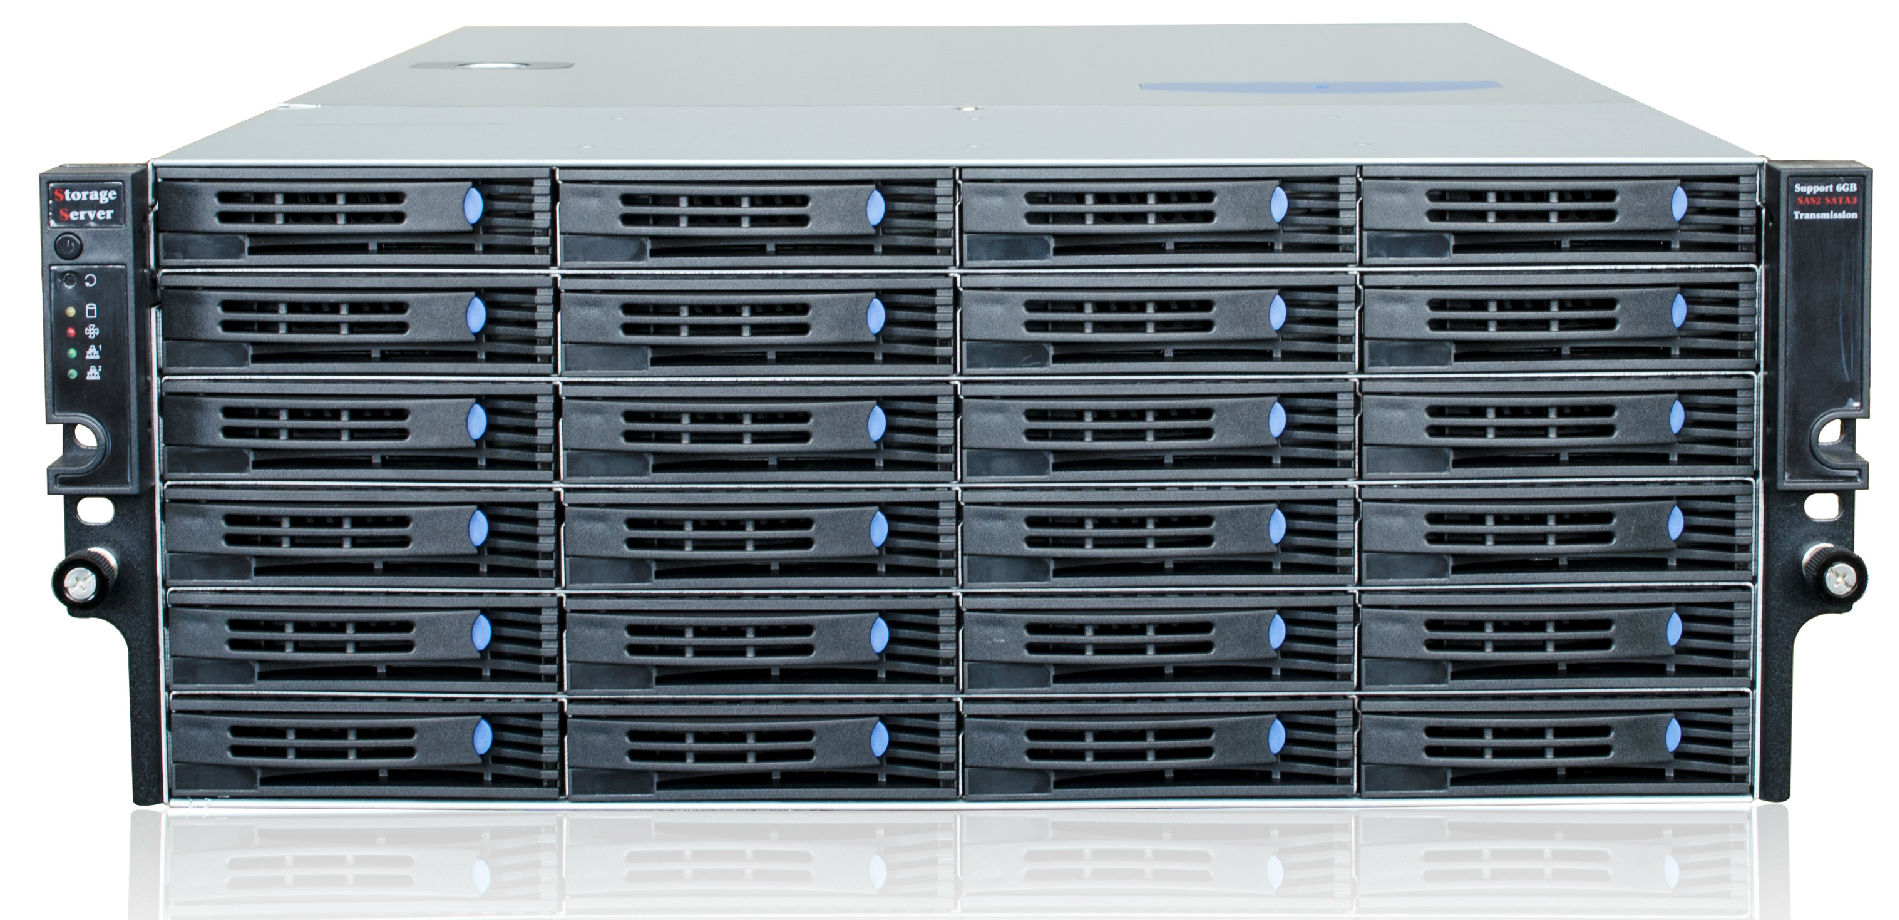 企业级网络存储系统-SP3024